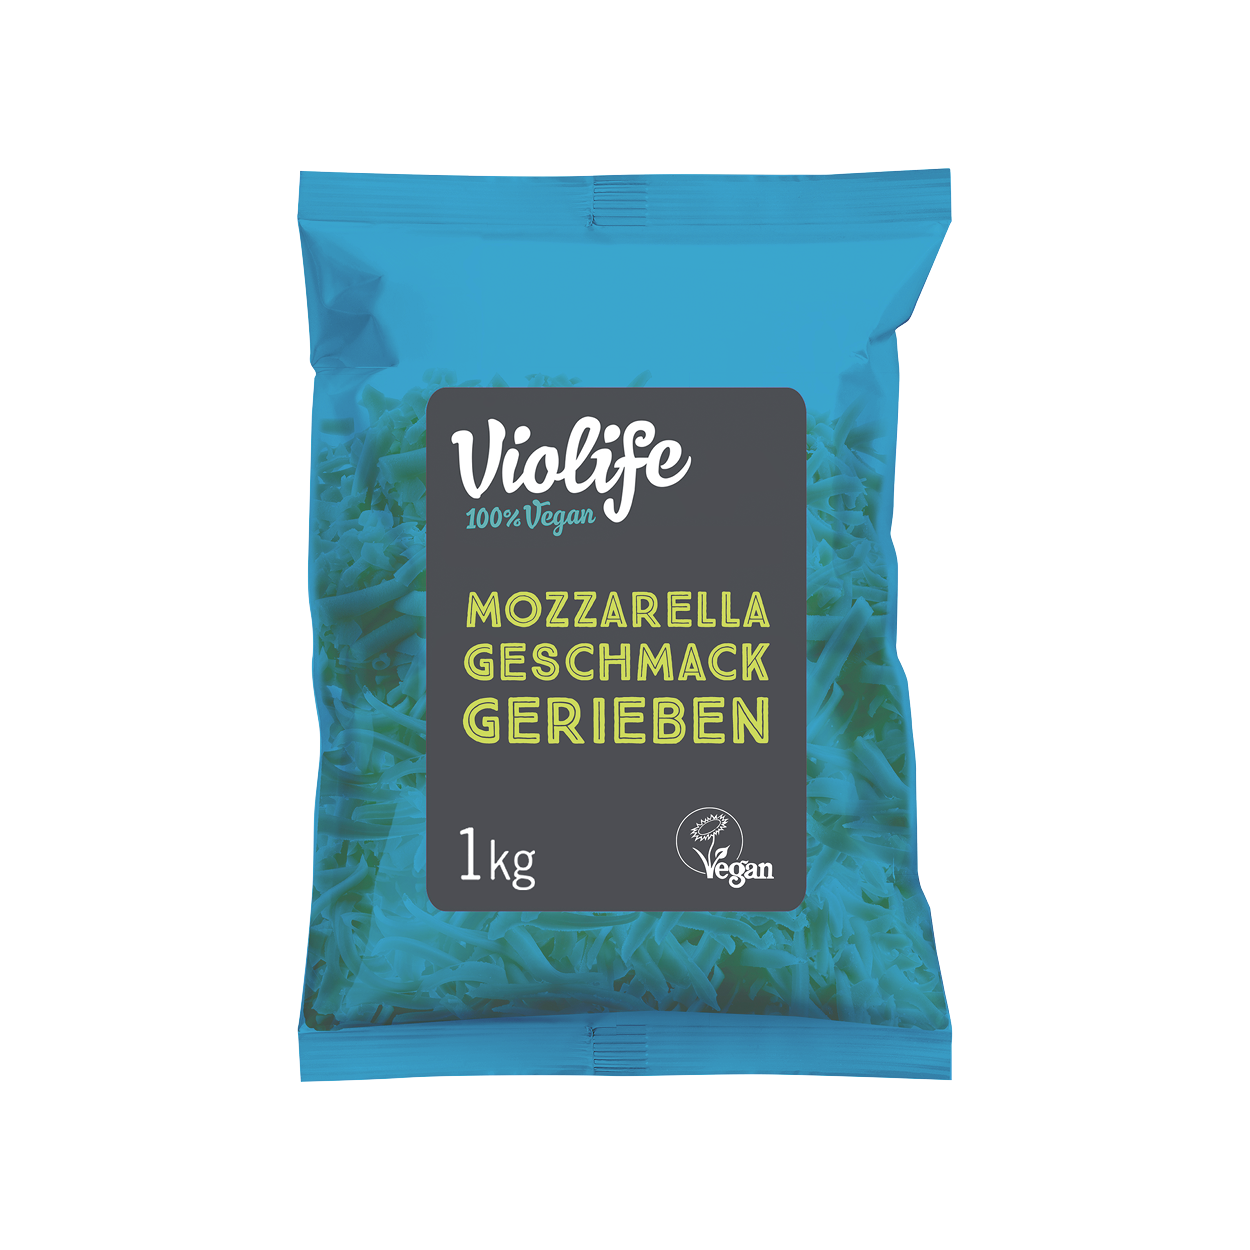 Violife Mozzarella Geschmack Gerieben 5 x 1kg